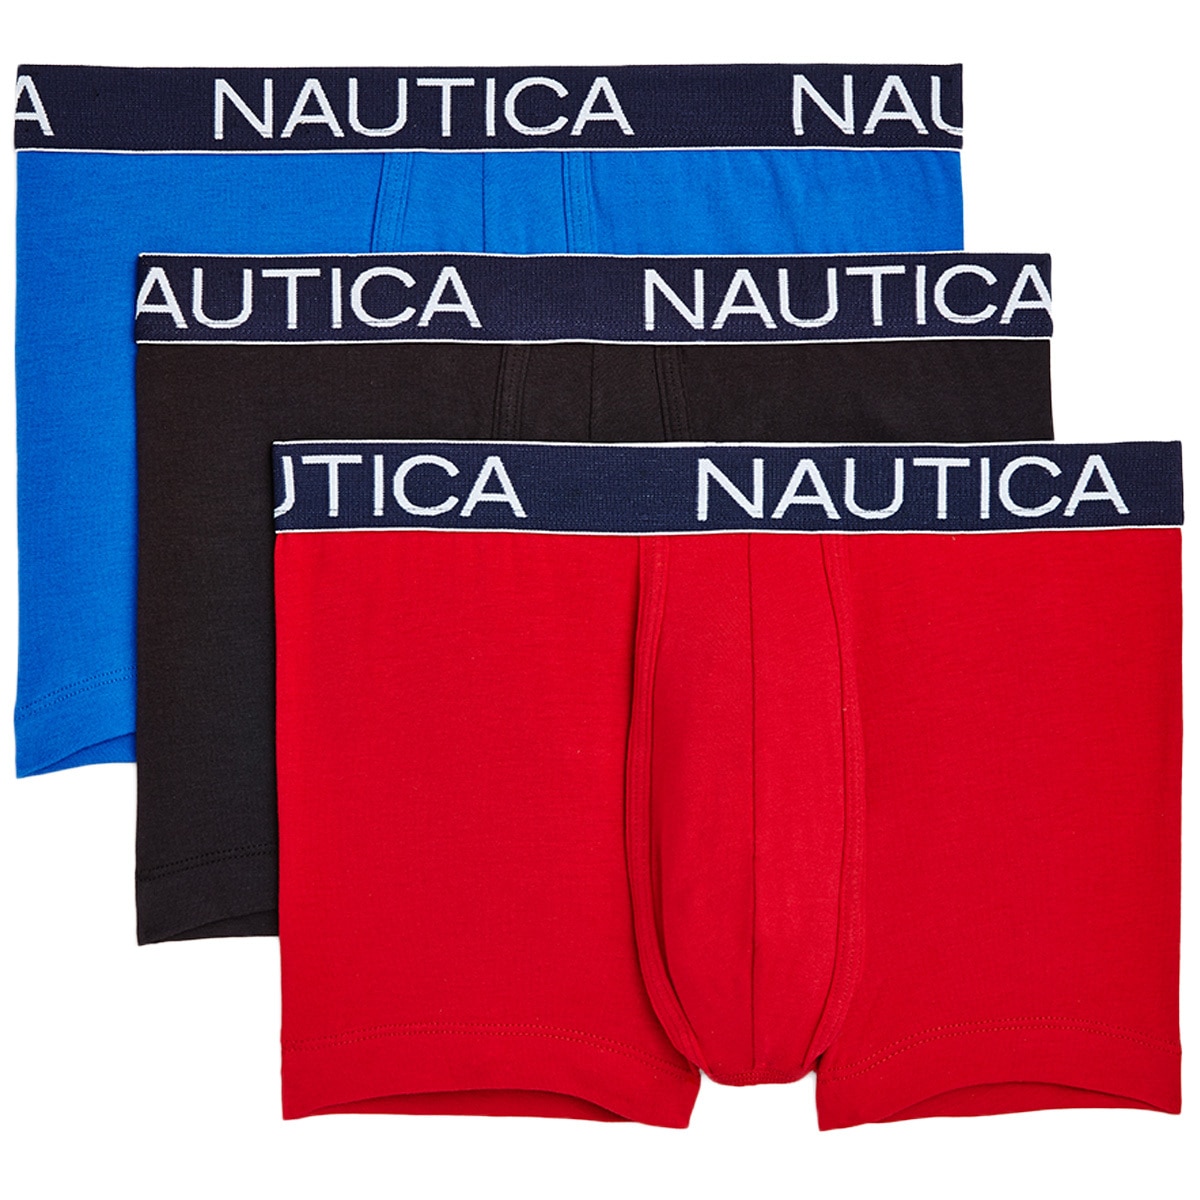 Nautica 3 pack Trunk - Black/Blue/red